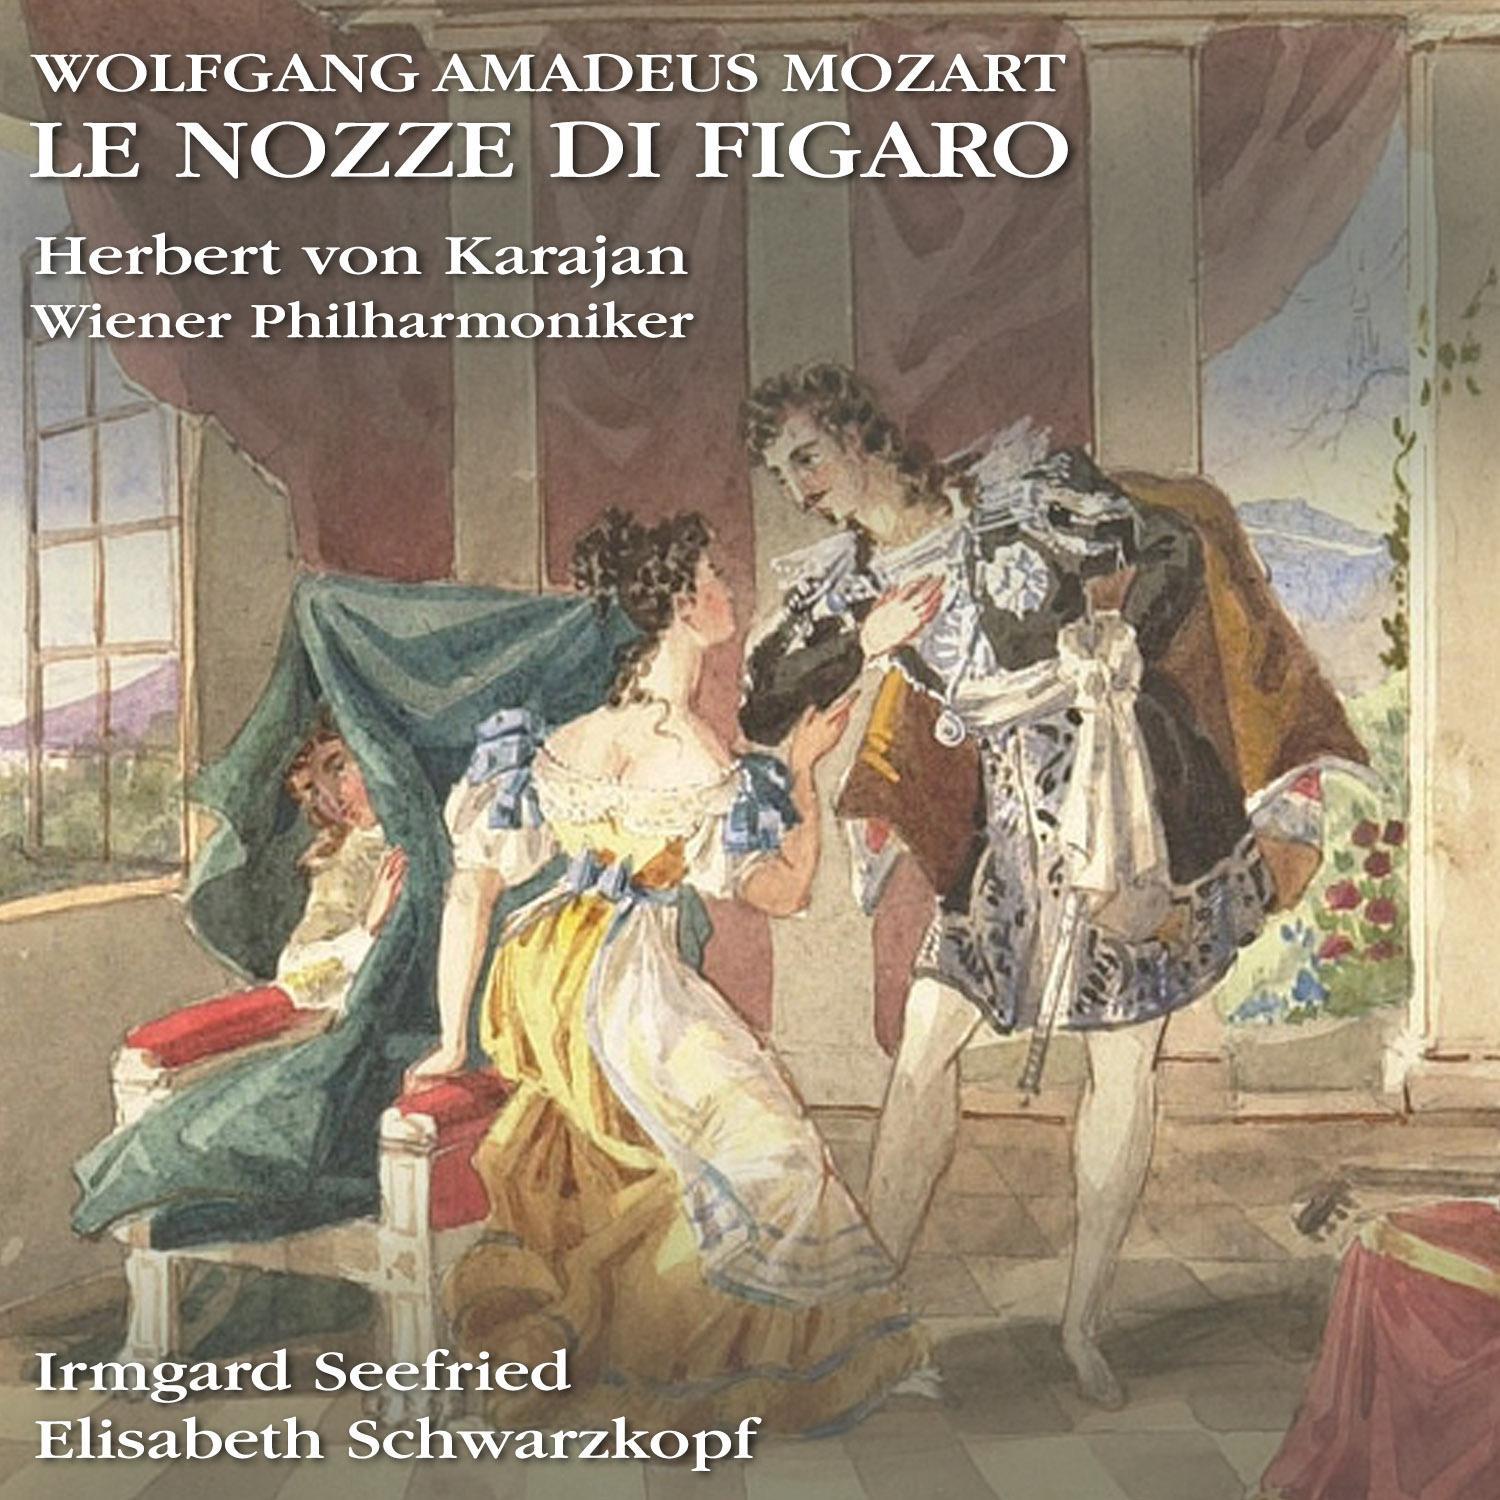 Le nozze di Figaro, Op. K 492, Act 4: Piano, pianin, le andro piu presso